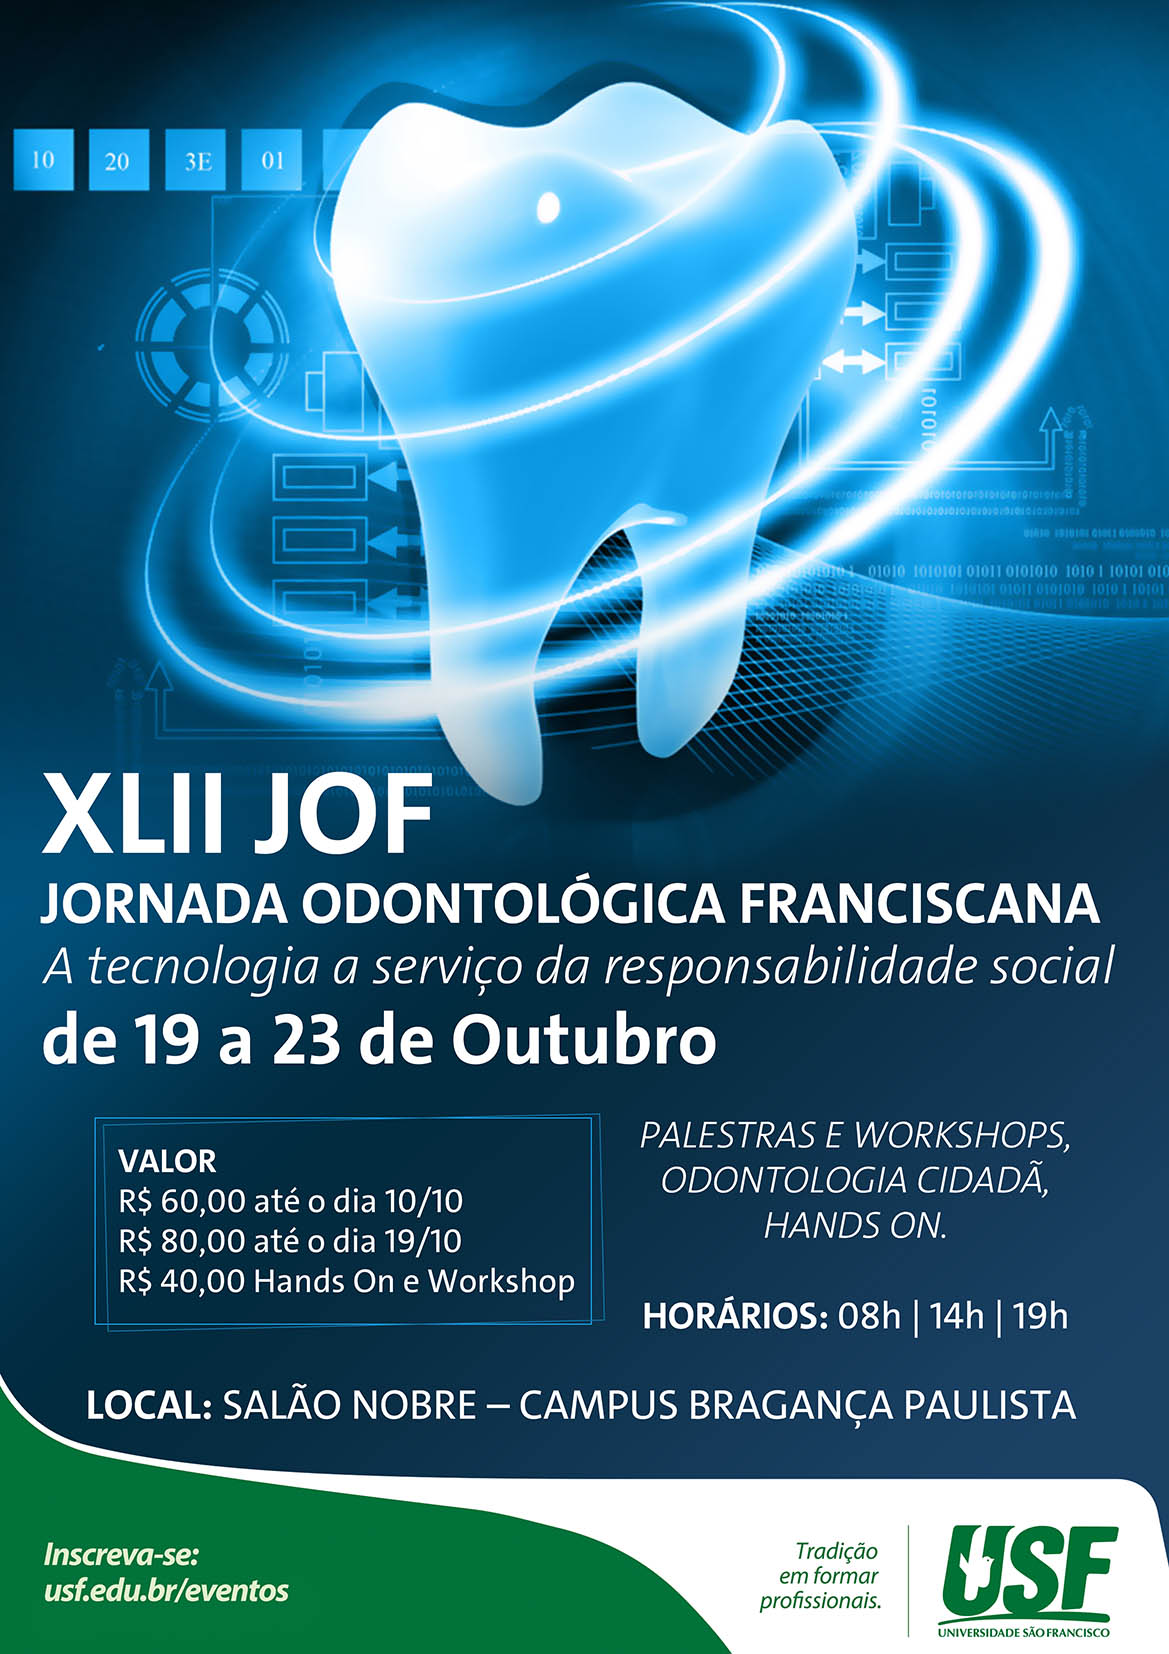 XLII Jornada Odontológica Franciscana (JOF)